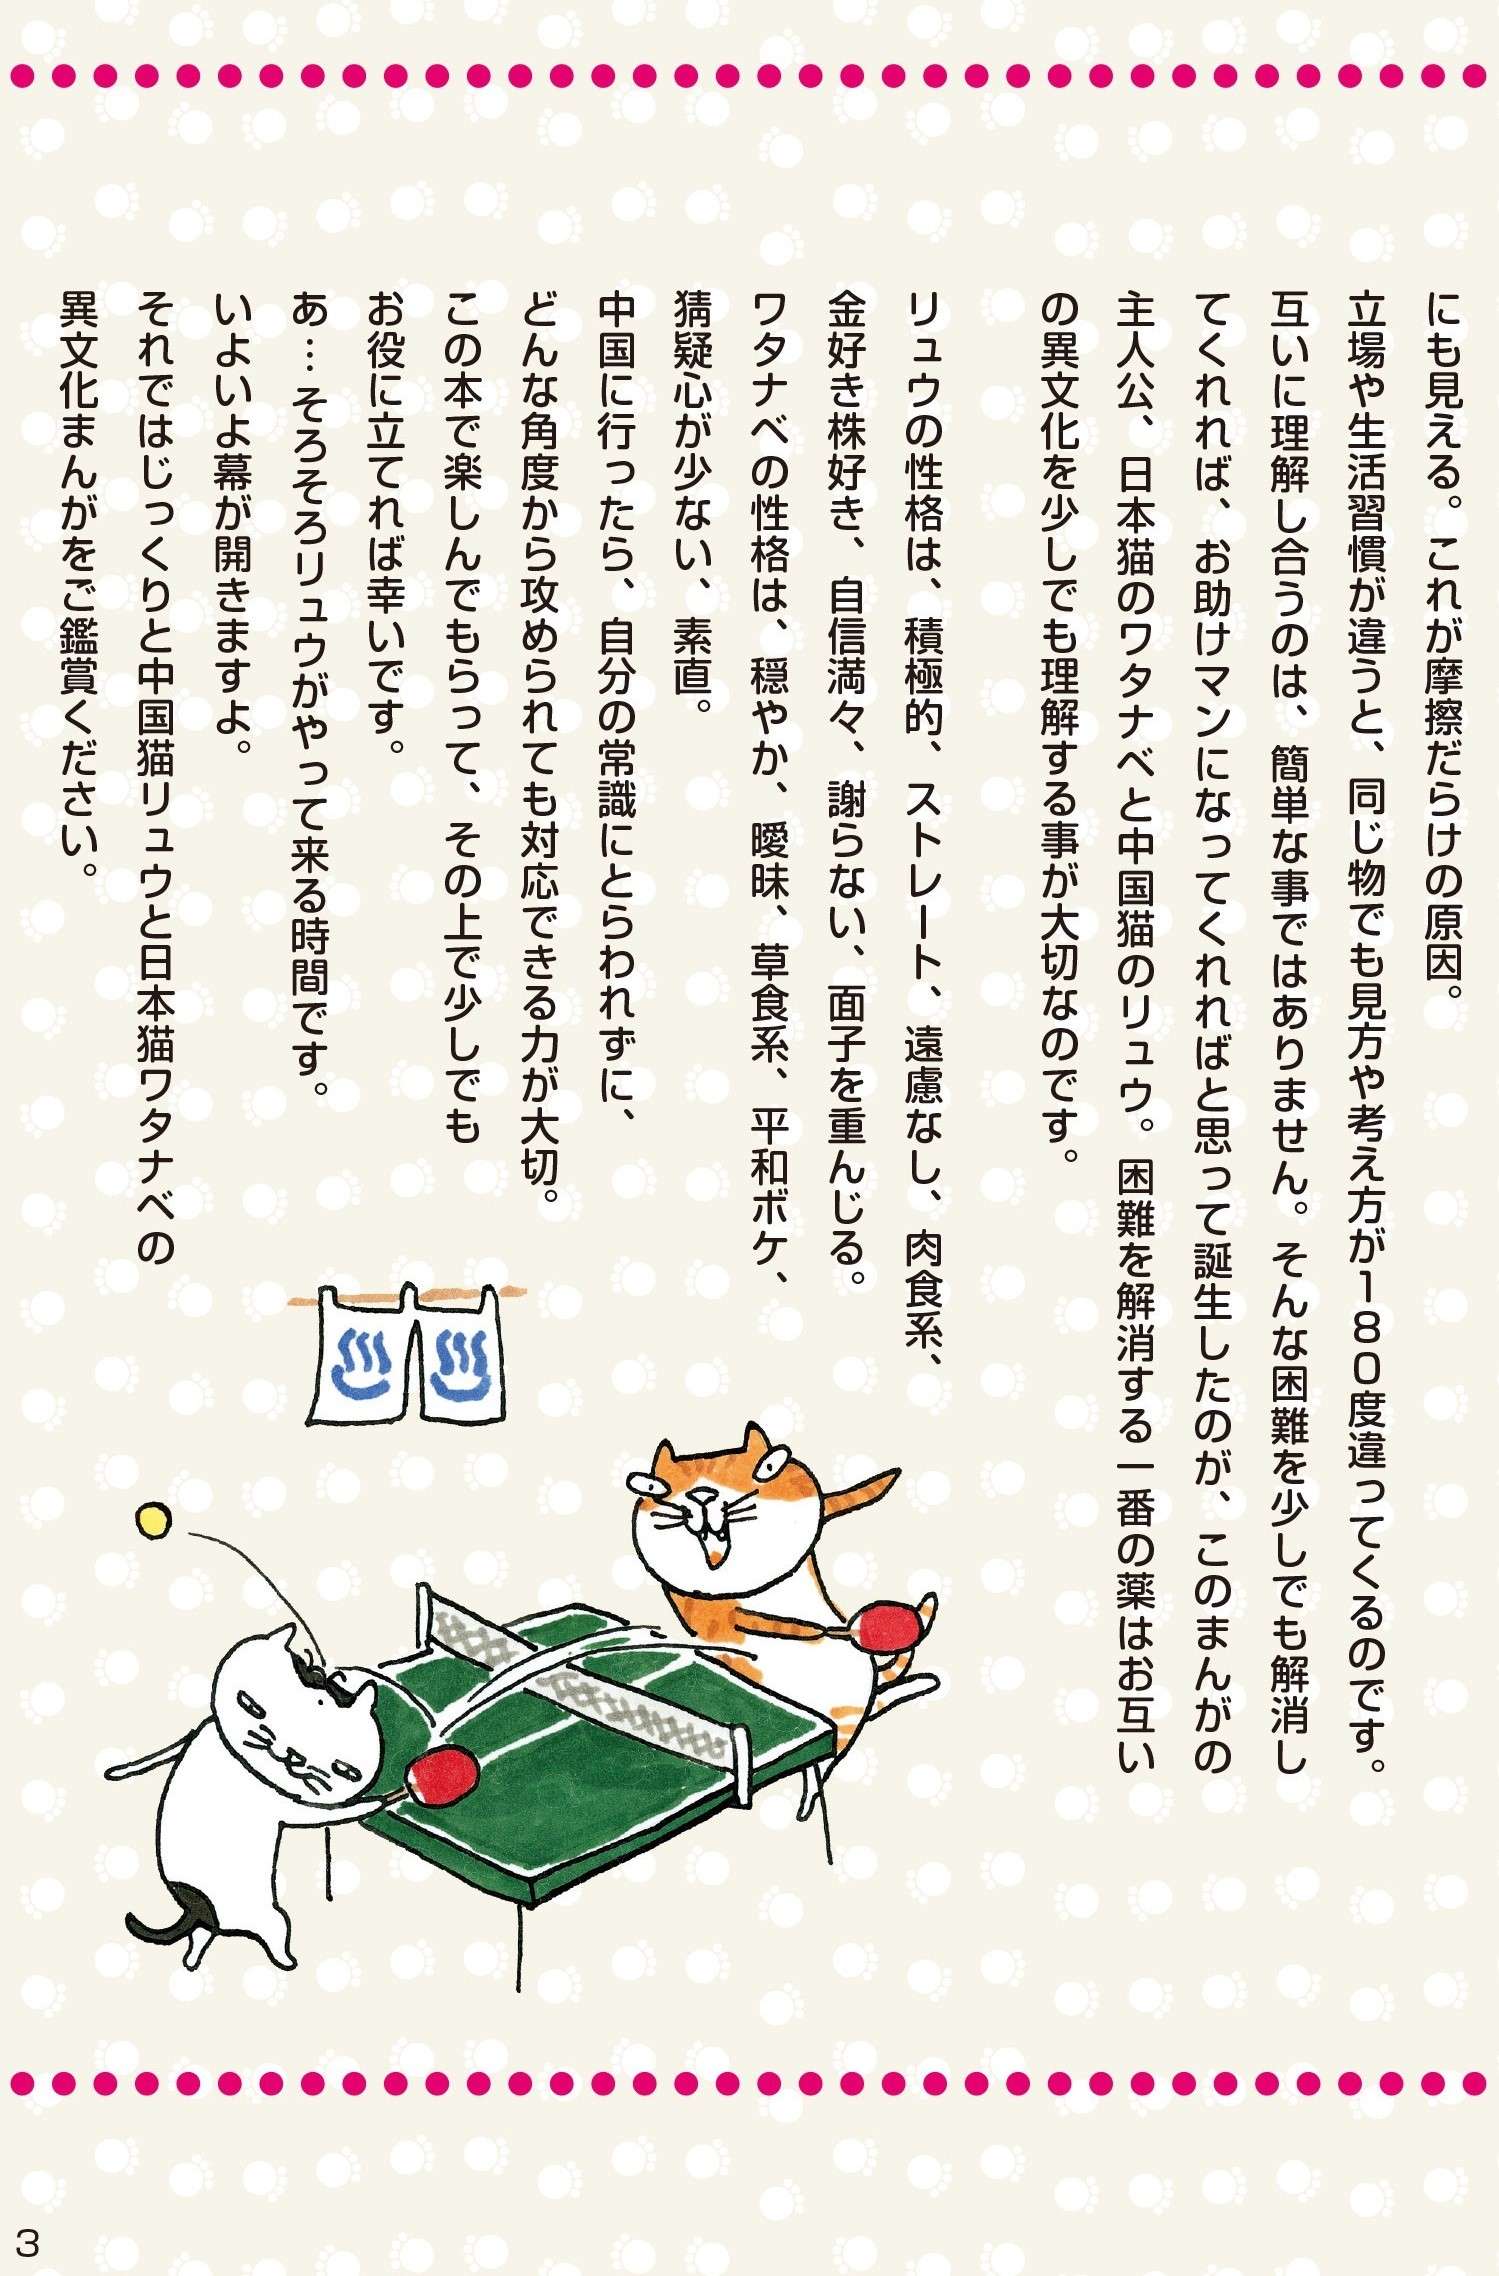 自己紹介から違う！  謙遜する日本猫とアピールしまくる中国猫／ニャンでも比較文化論  ニャンでも比較文化論①-2.jpg